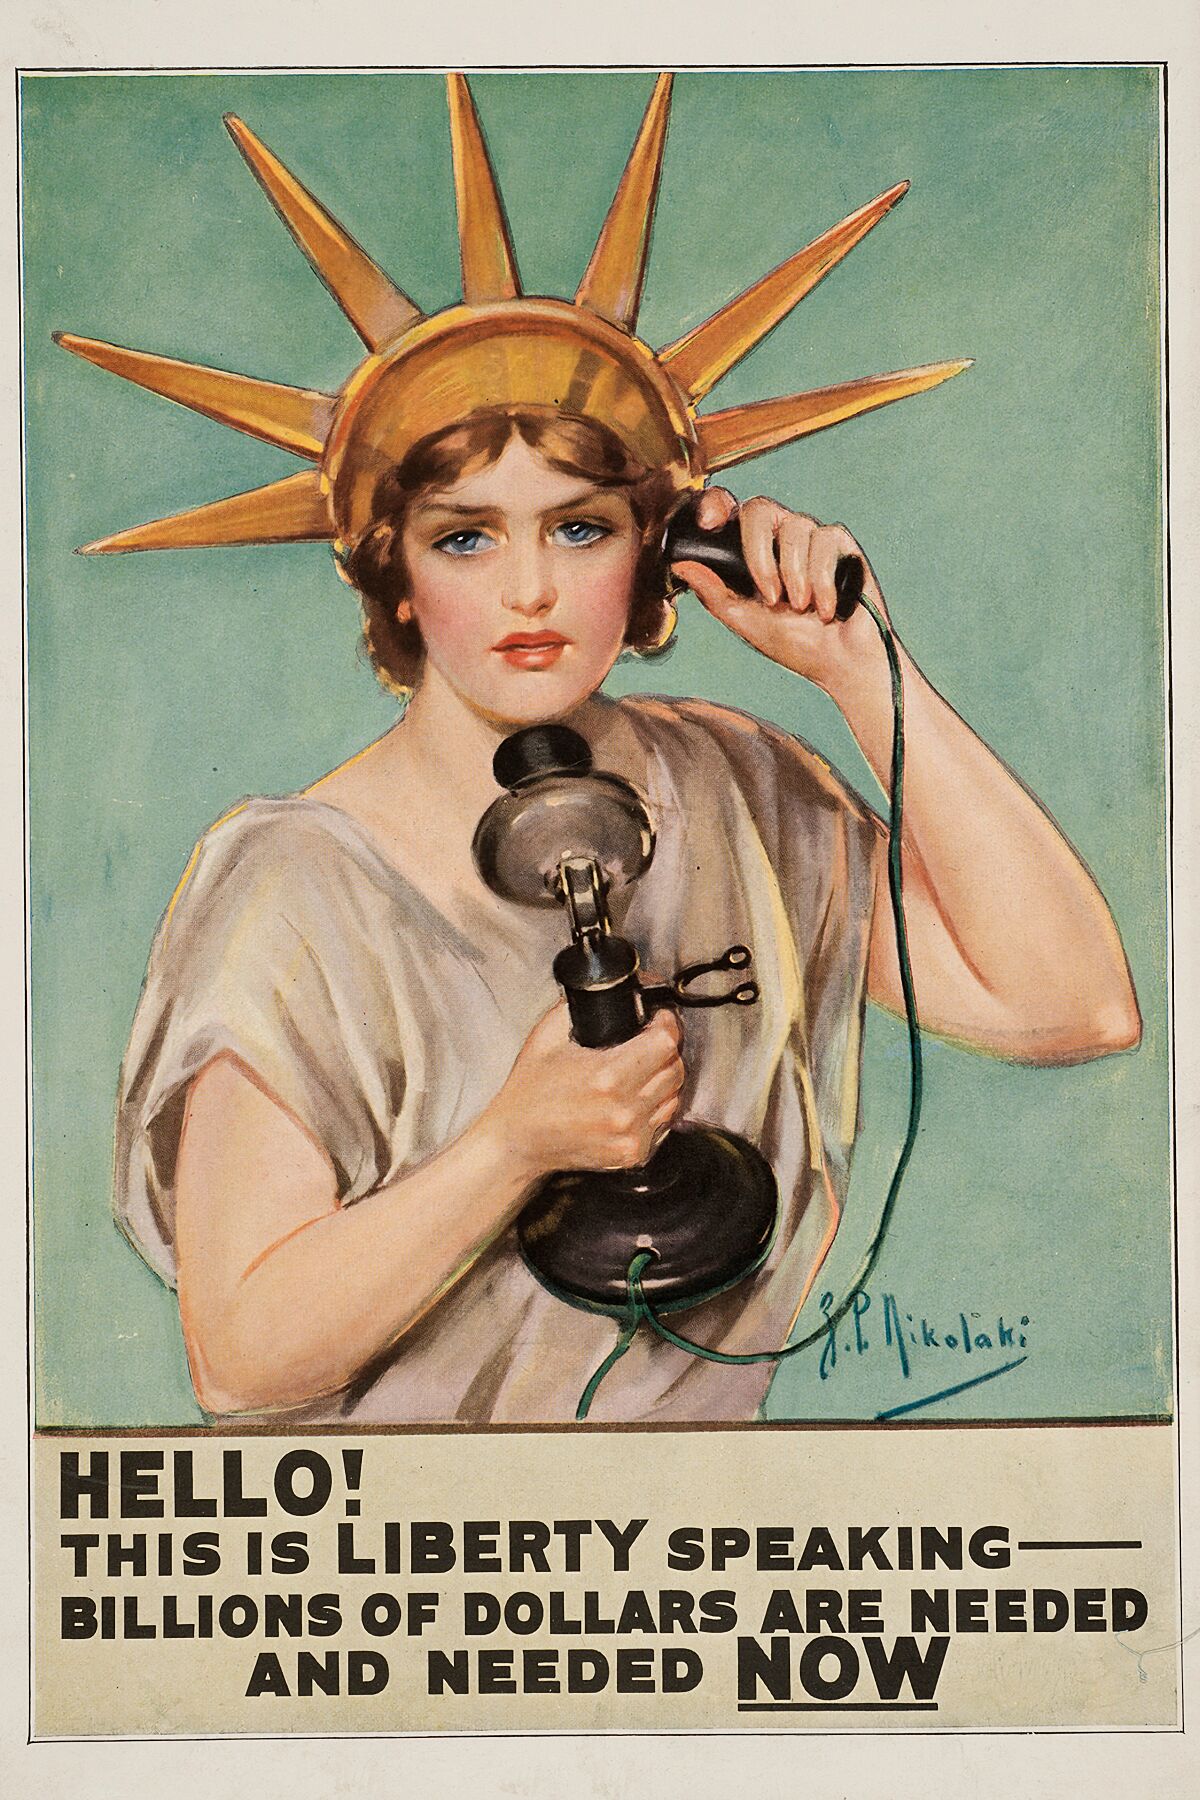 Hello! This is Liberty speaking by Z. P. Nikolaki - 1918